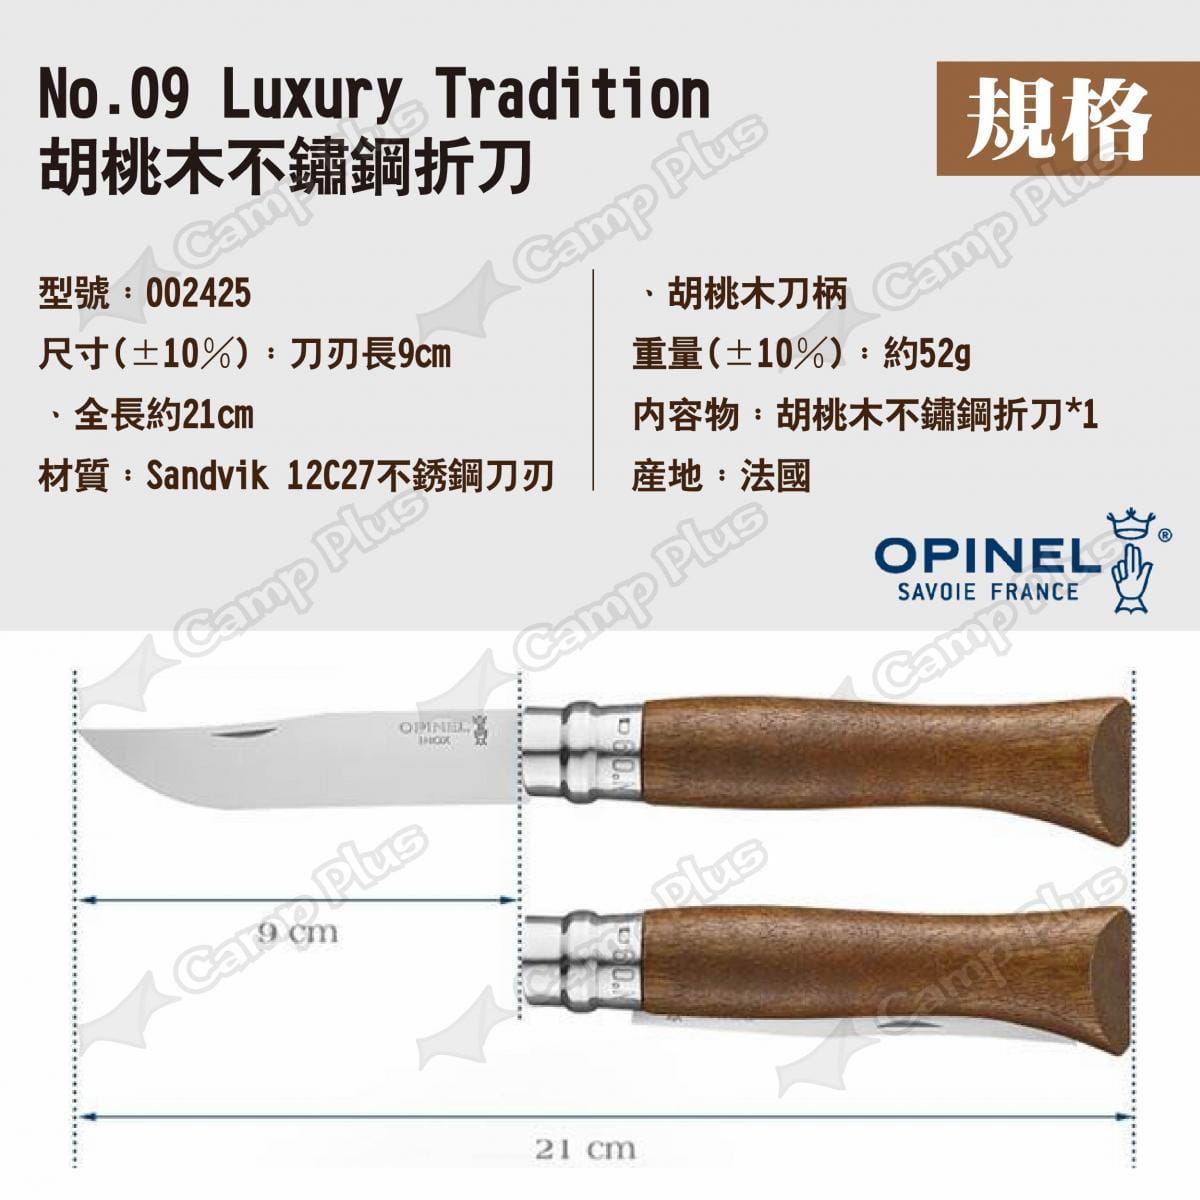 【OPINEL】No.09 Luxury Tradition胡桃木不鏽鋼折刀 002425 悠遊戶外 7